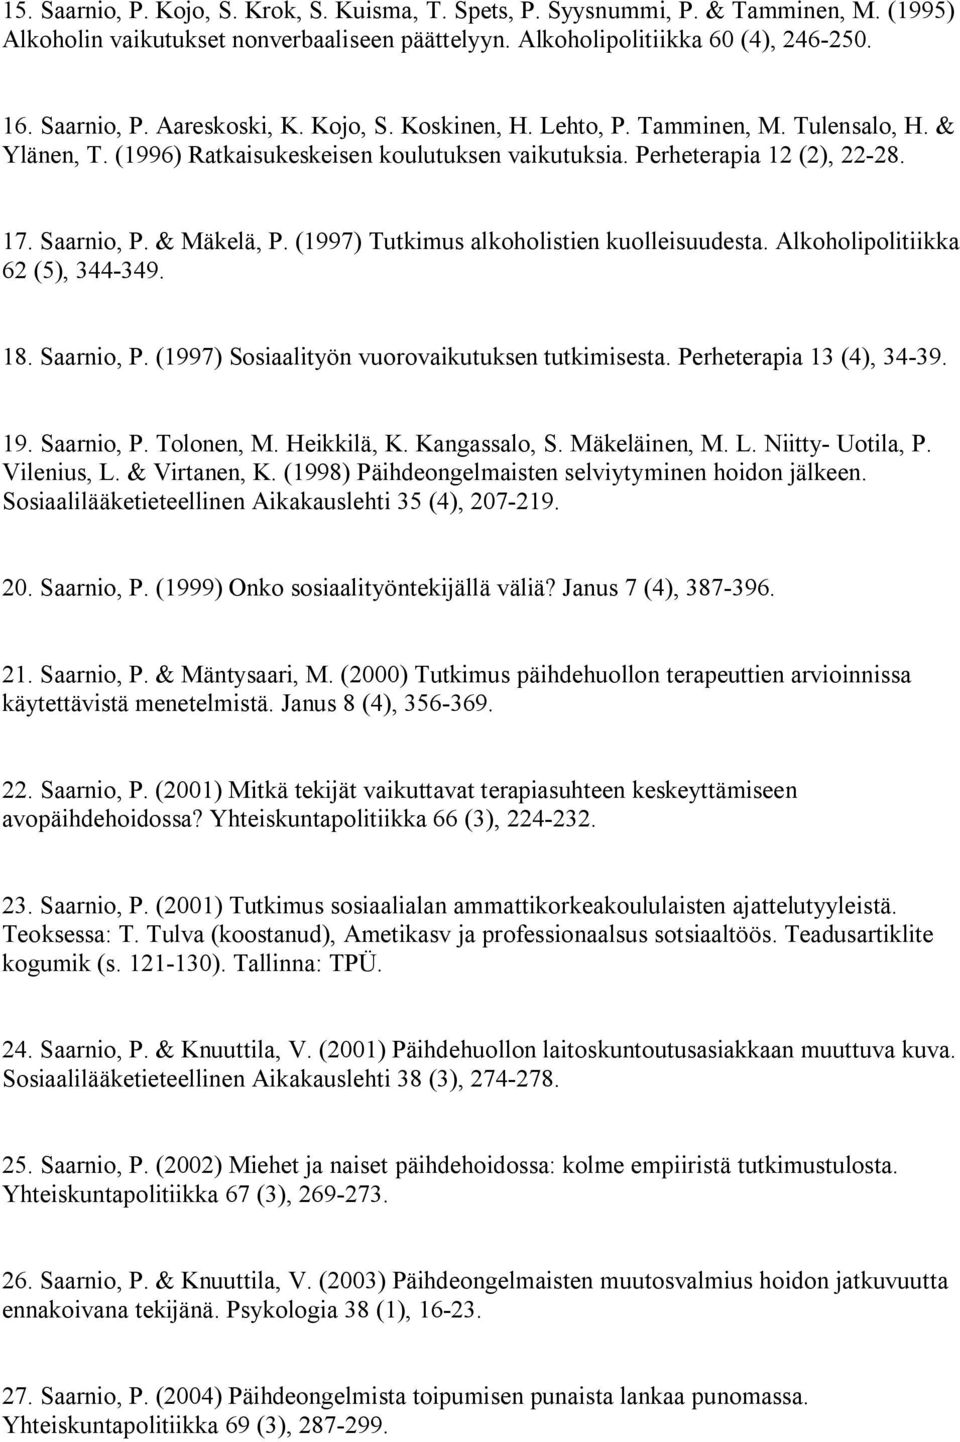 (1997) Tutkimus alkoholistien kuolleisuudesta. Alkoholipolitiikka 62 (5), 344-349. 18. Saarnio, P. (1997) Sosiaalityön vuorovaikutuksen tutkimisesta. Perheterapia 13 (4), 34-39. 19. Saarnio, P. Tolonen, M.